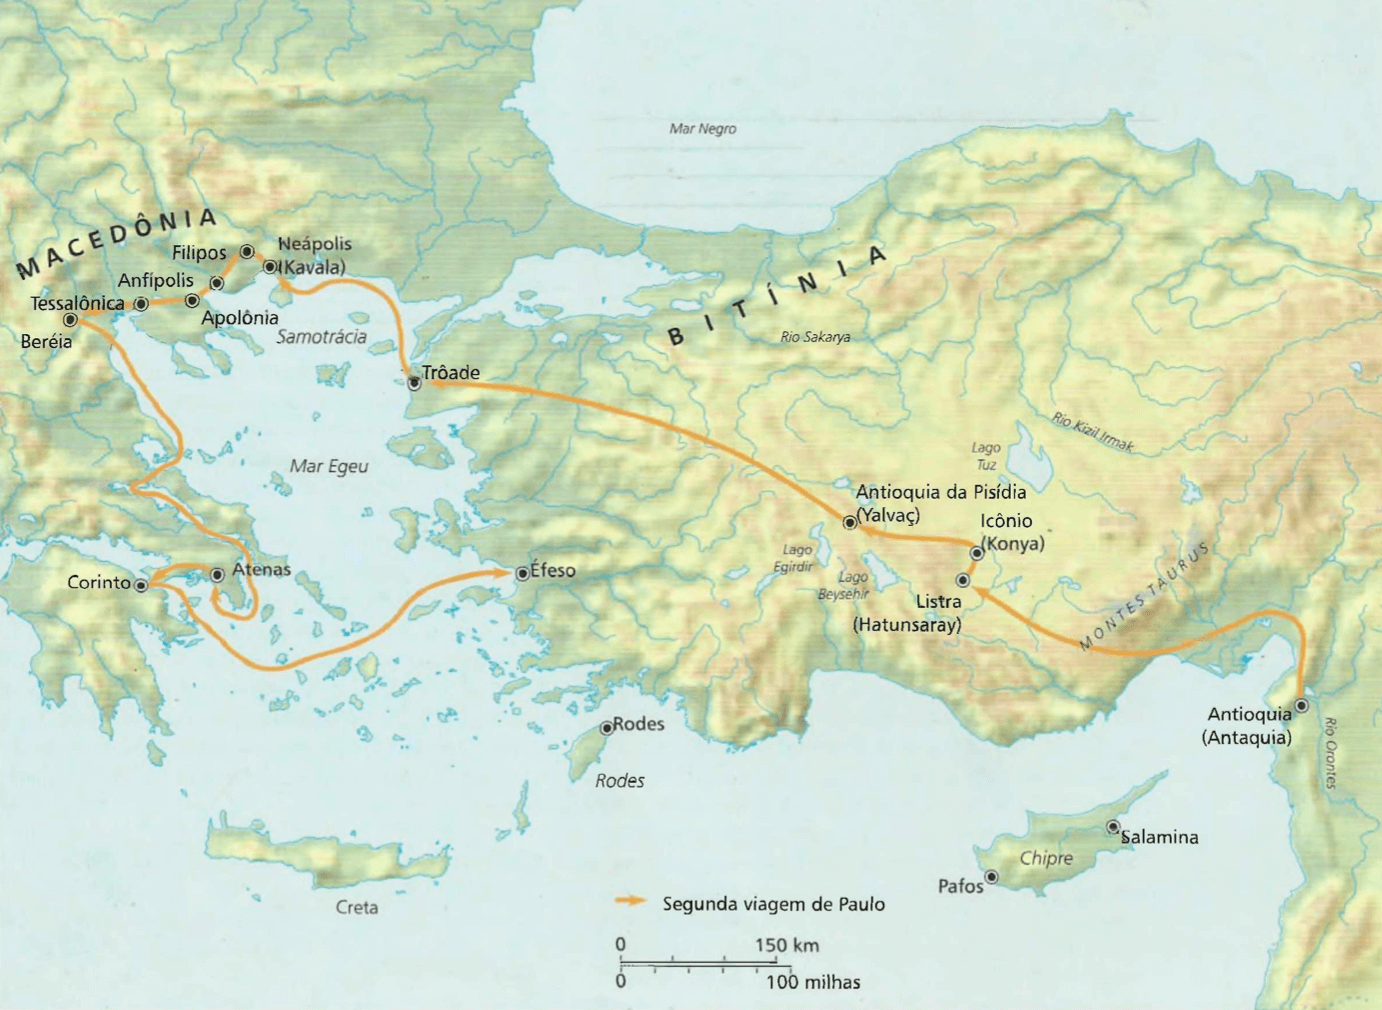 A segunda viagem de Paulo O mapa mostra o itinerário da segunda viagem de Paulo (parte dela com Silas) em 49-52 d.C., saindo da Antioquia, passando pela Turquia e norte da Grécia até Atenas, Corinto e Éfeso.